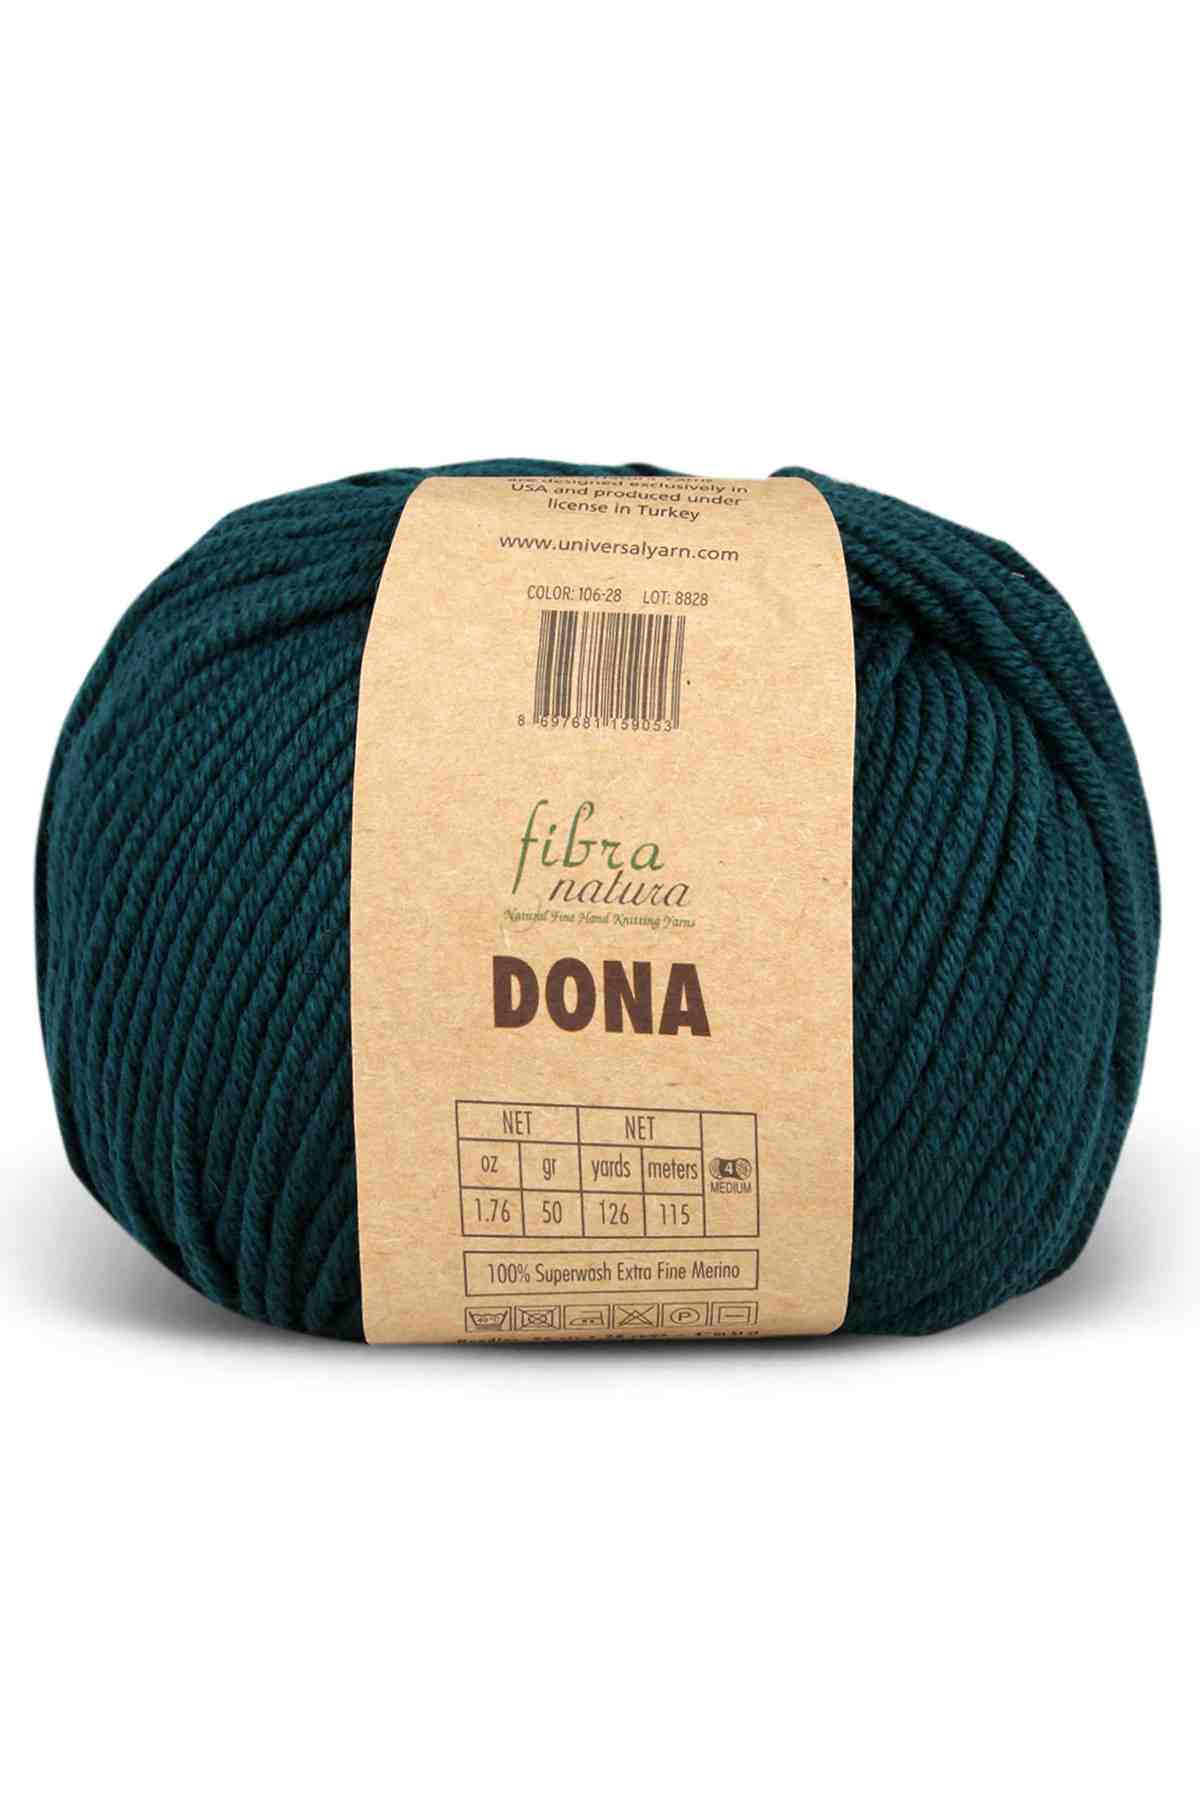 Fibra Natura Dona Superwash Merino Wool Yarn